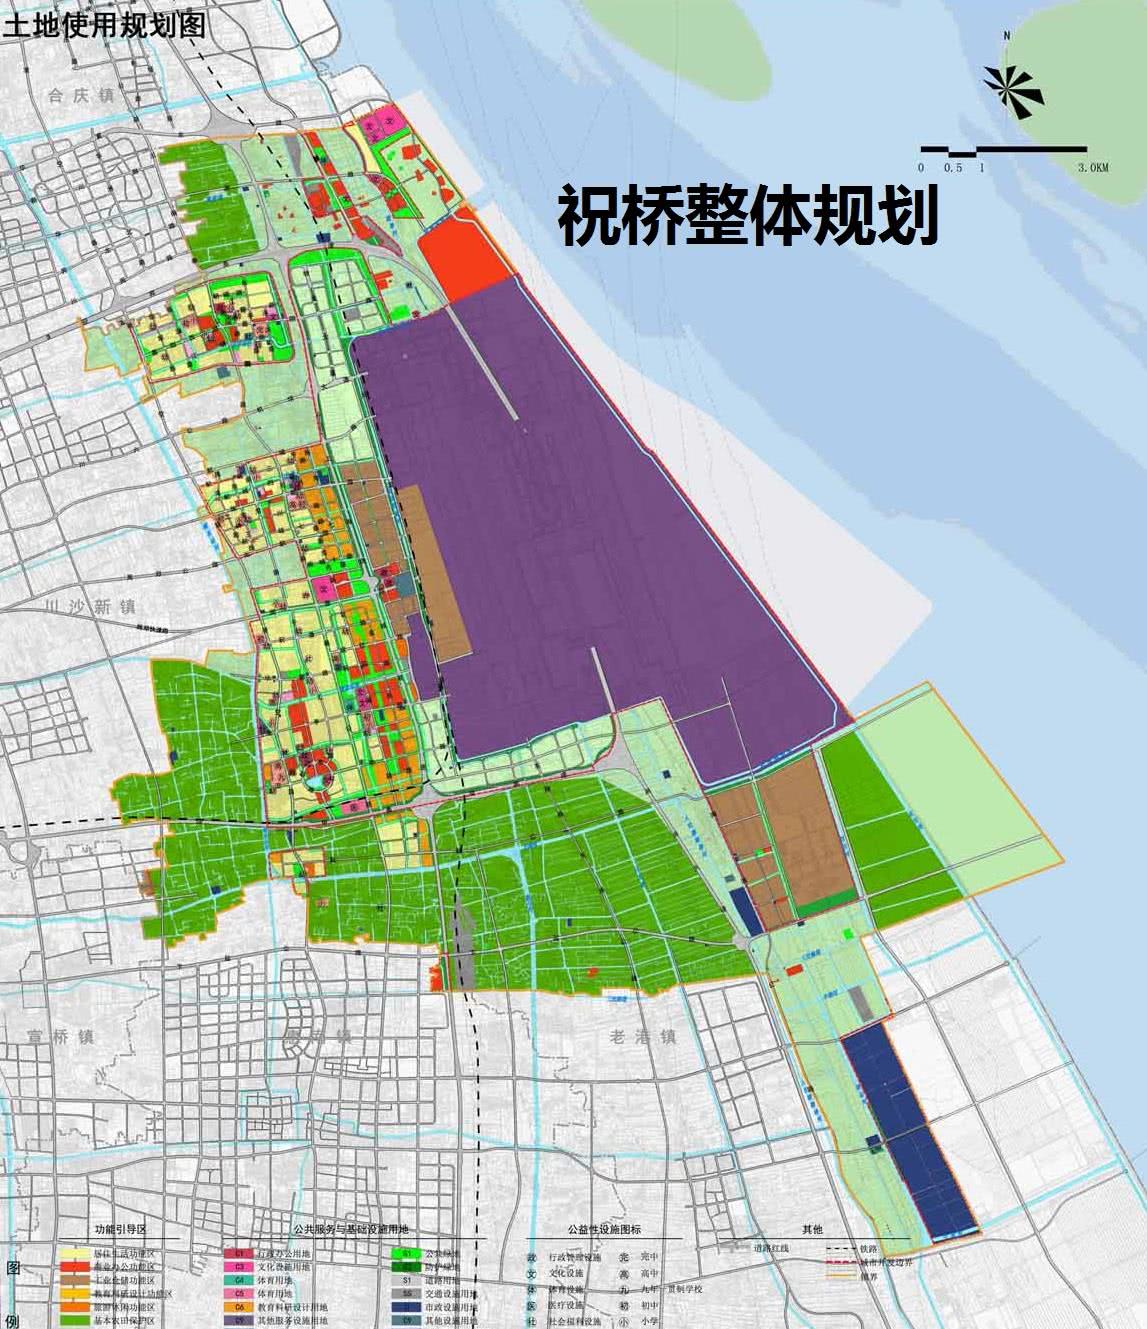 解析上海市祝桥镇总体规划:上海东站和浦东机场组成枢纽之城